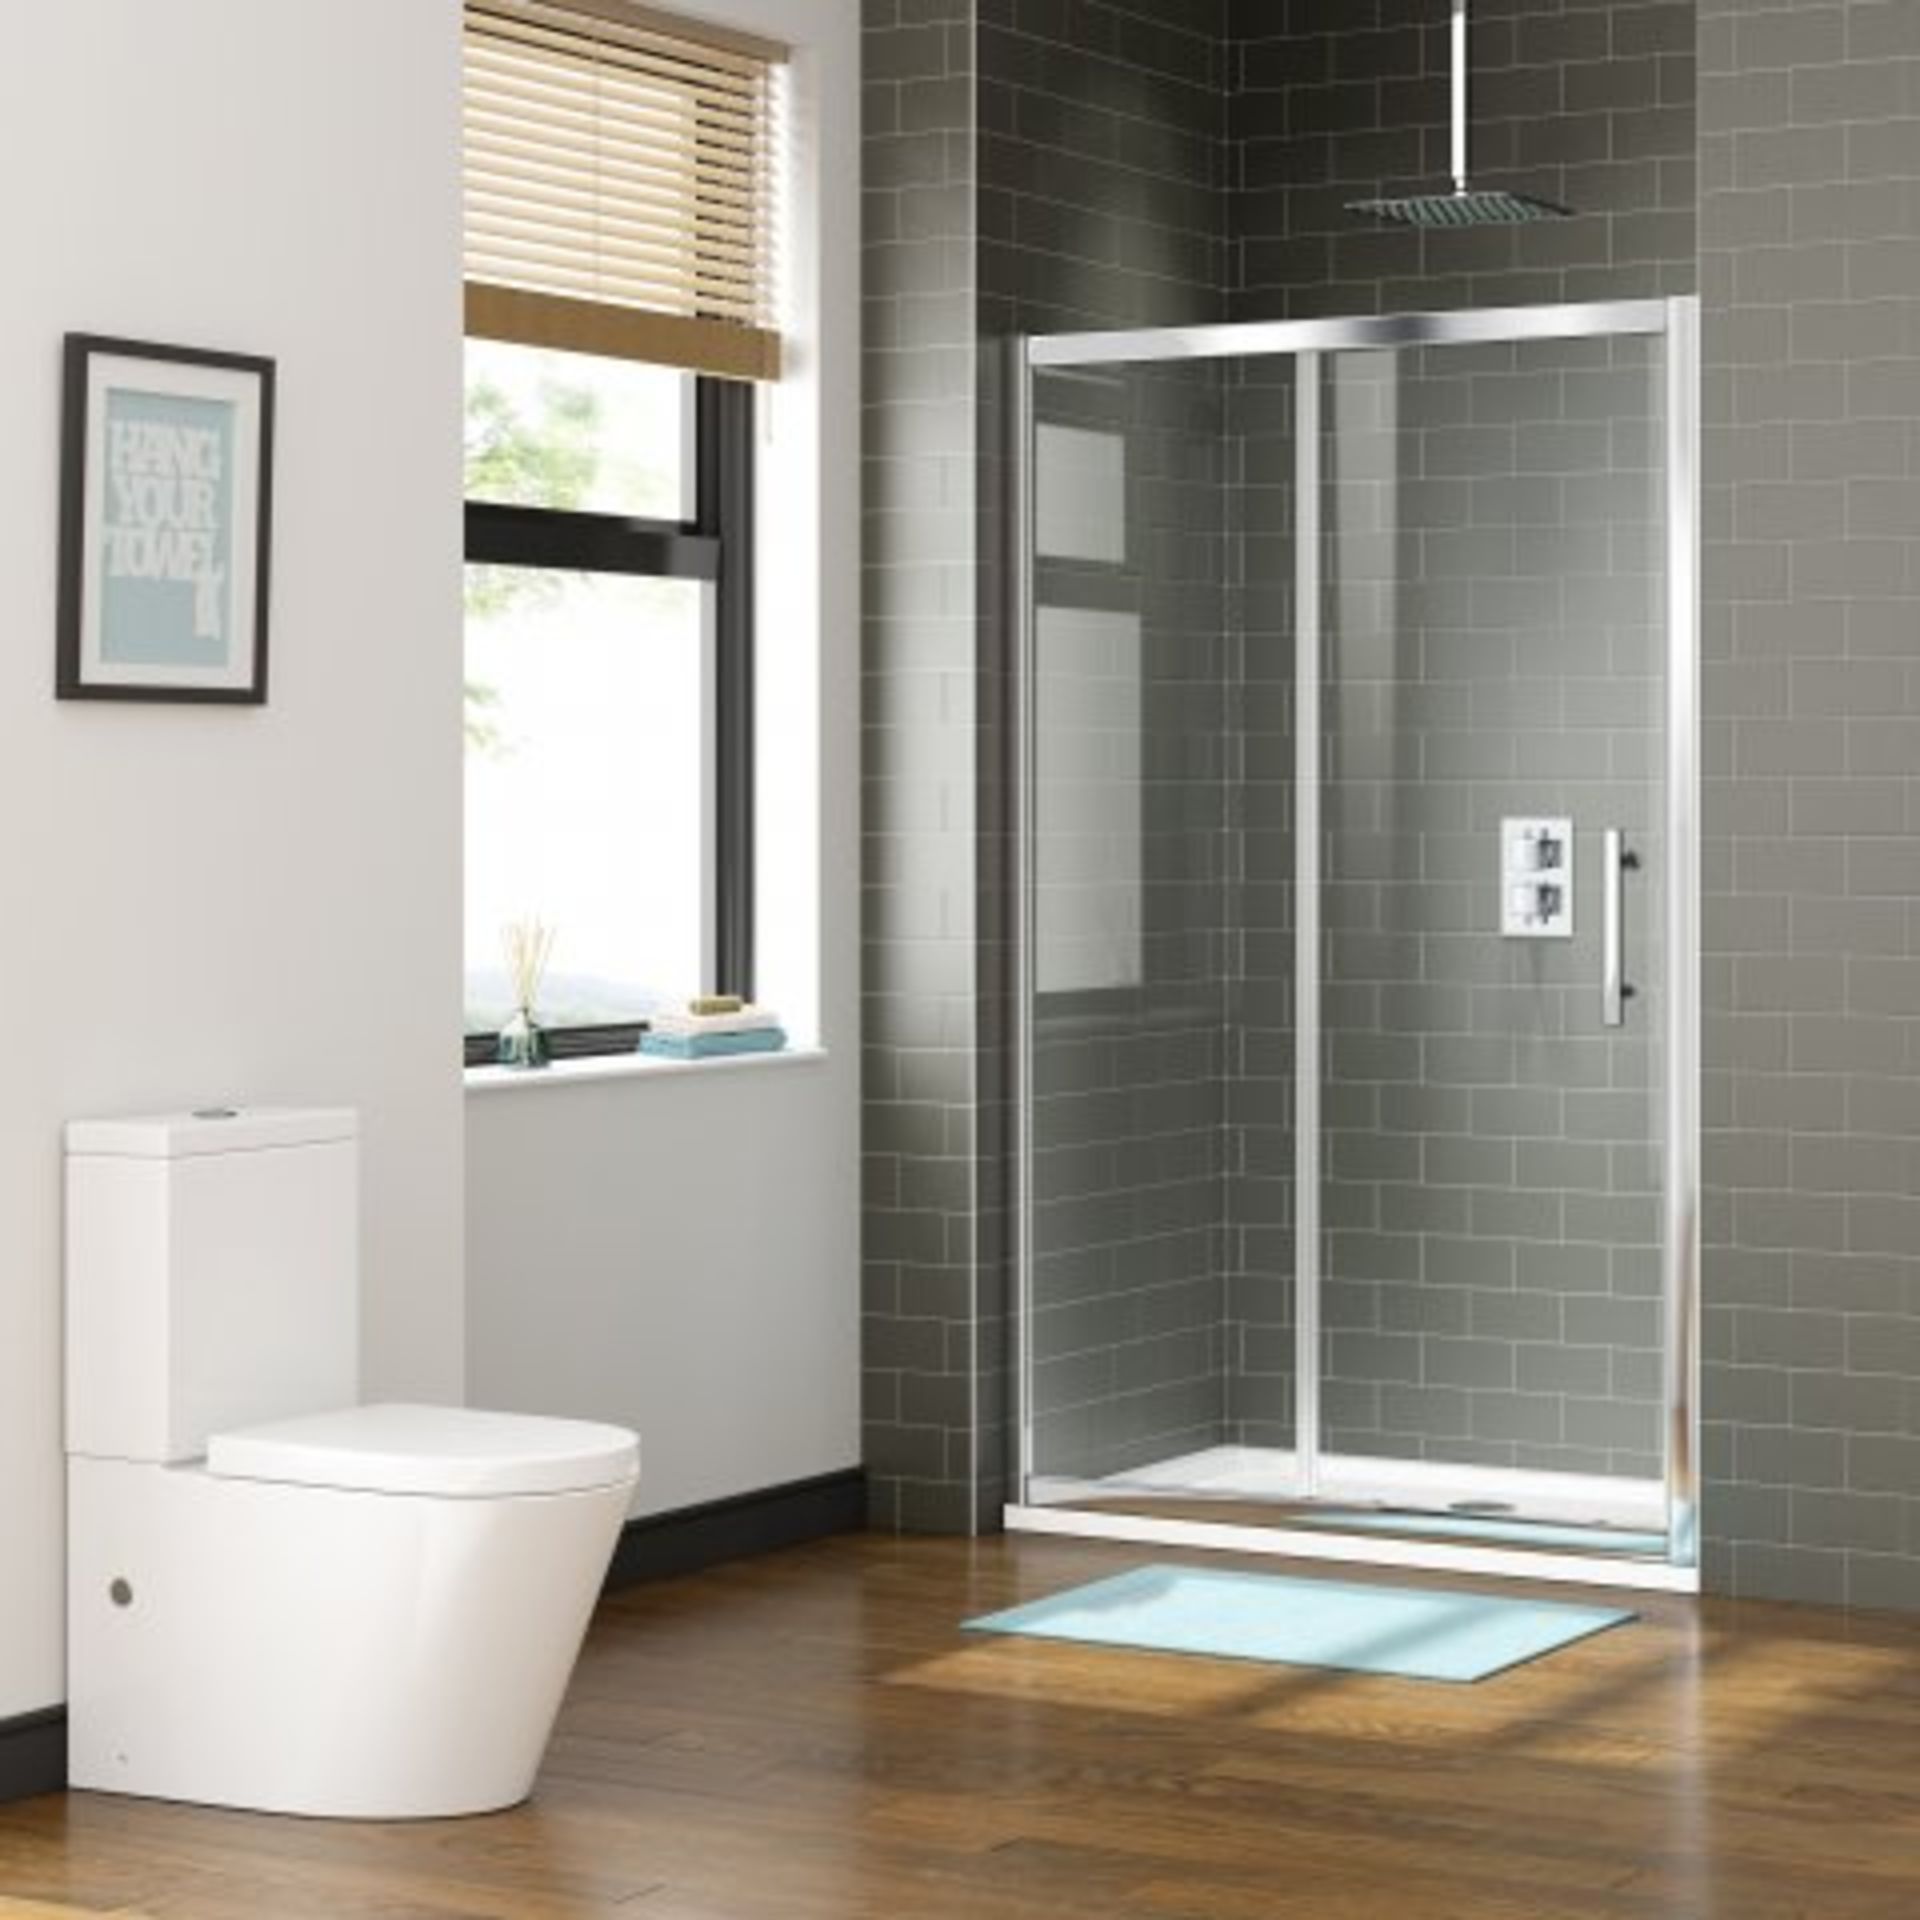 (H27) 1000mm - 8mm - Premium EasyClean Sliding Shower Door. RRP £299.99. Premium Design Our - Image 2 of 3